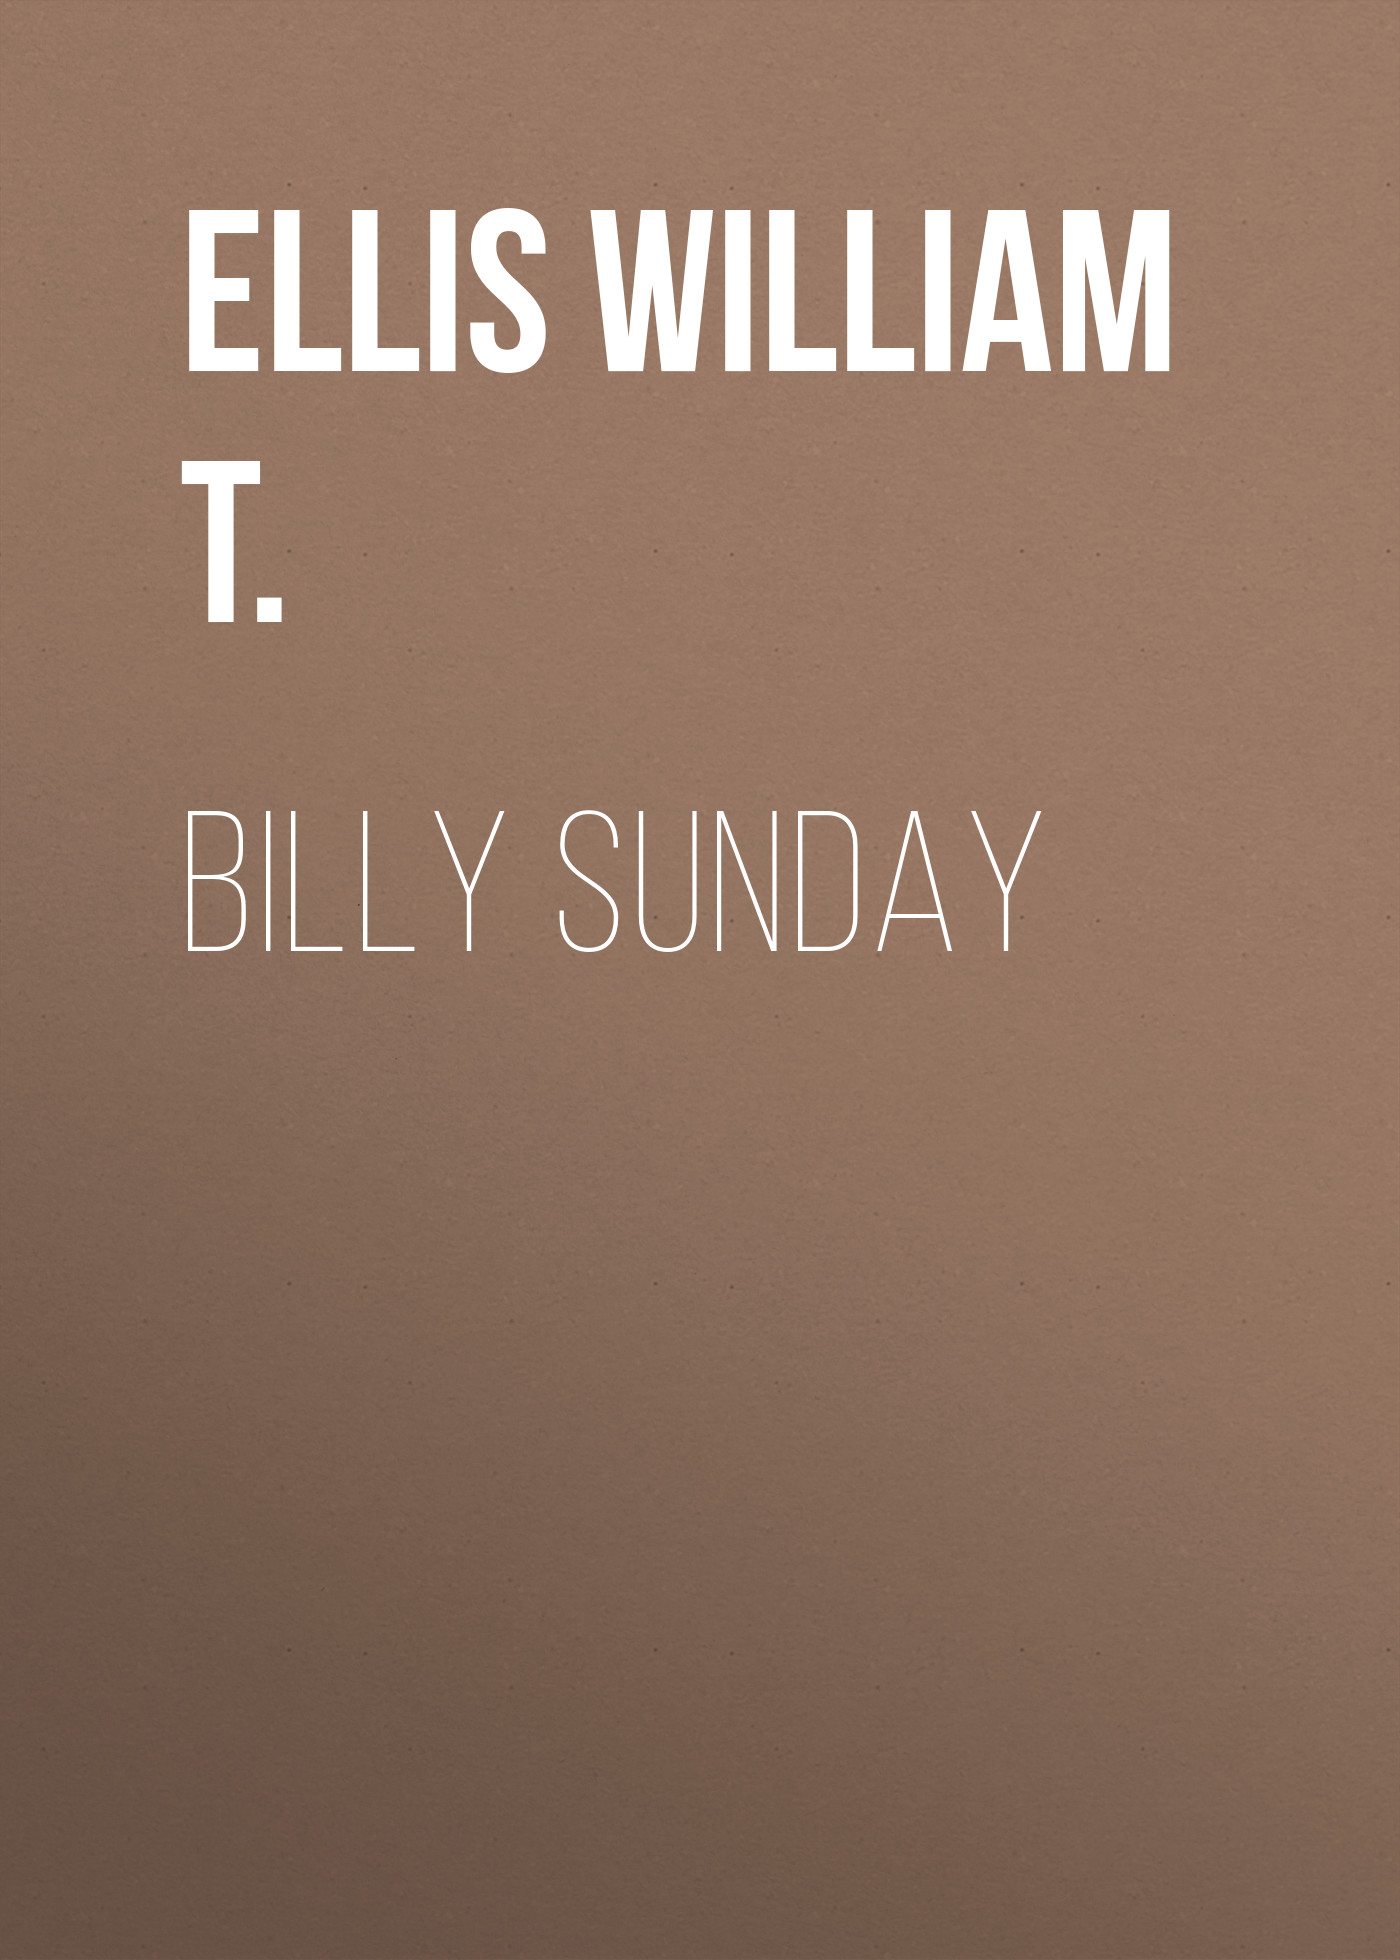 Книга Billy Sunday из серии , созданная William Ellis, может относится к жанру Зарубежная старинная литература, Зарубежная классика. Стоимость электронной книги Billy Sunday с идентификатором 24713673 составляет 0 руб.